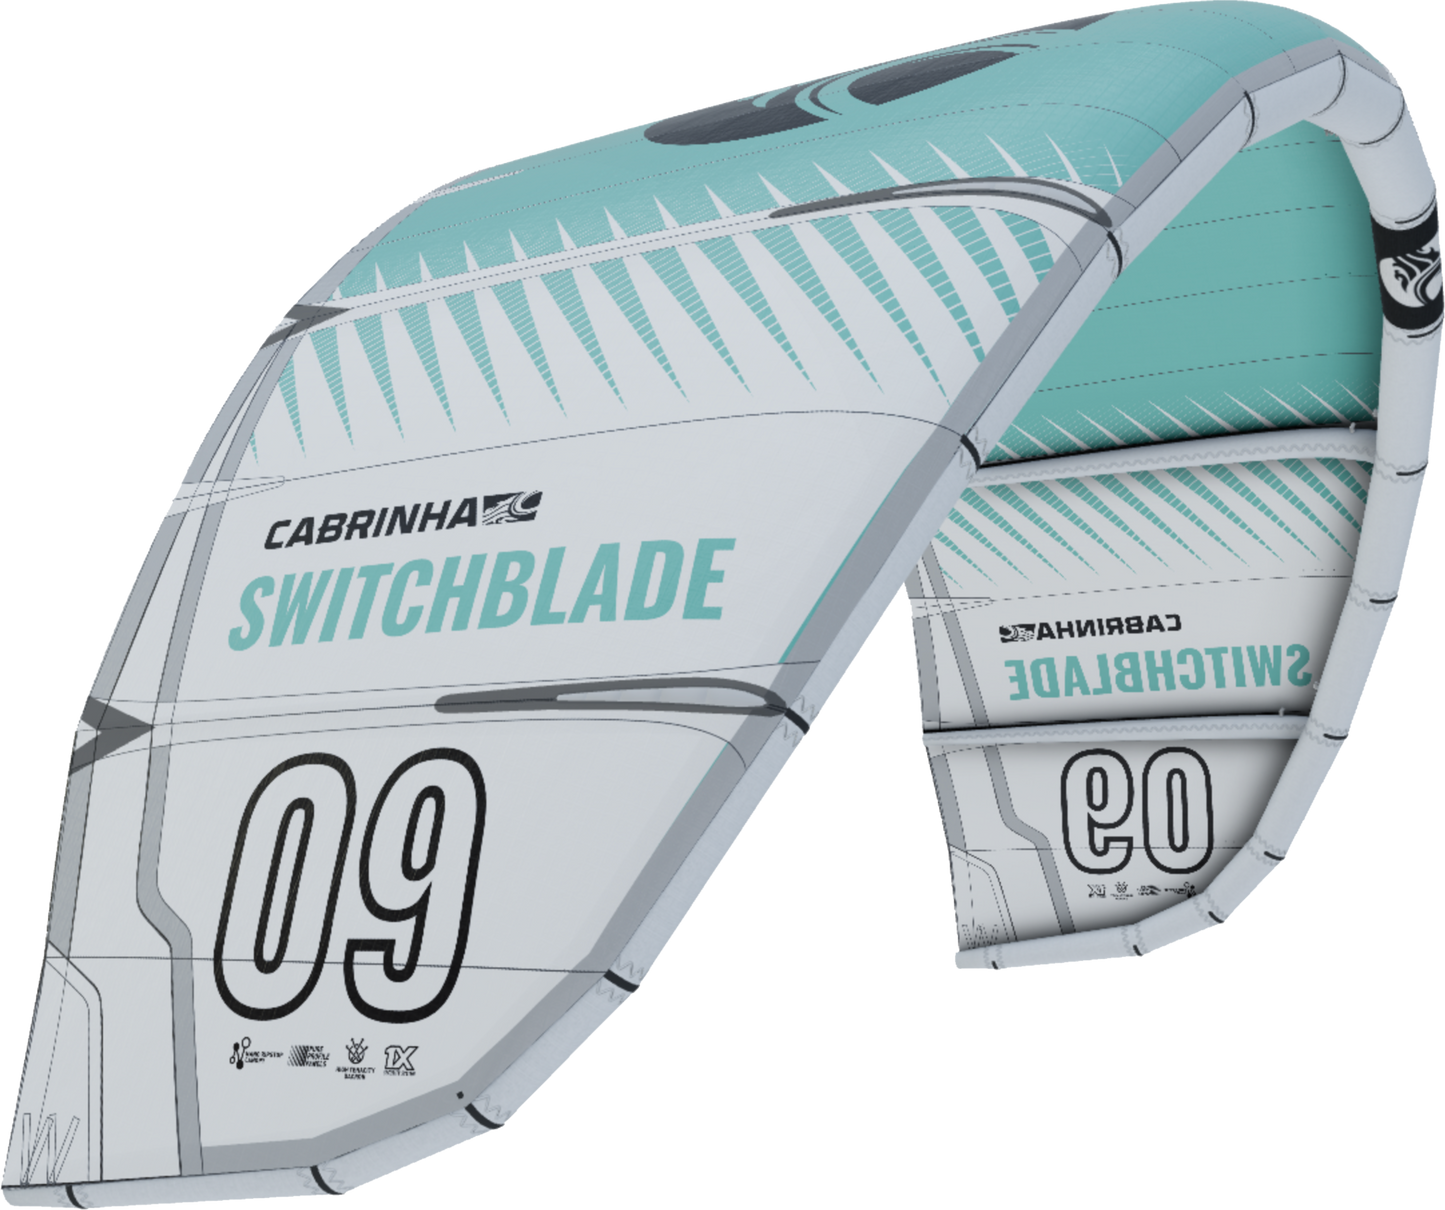 Switchblade (Kitesurfing)